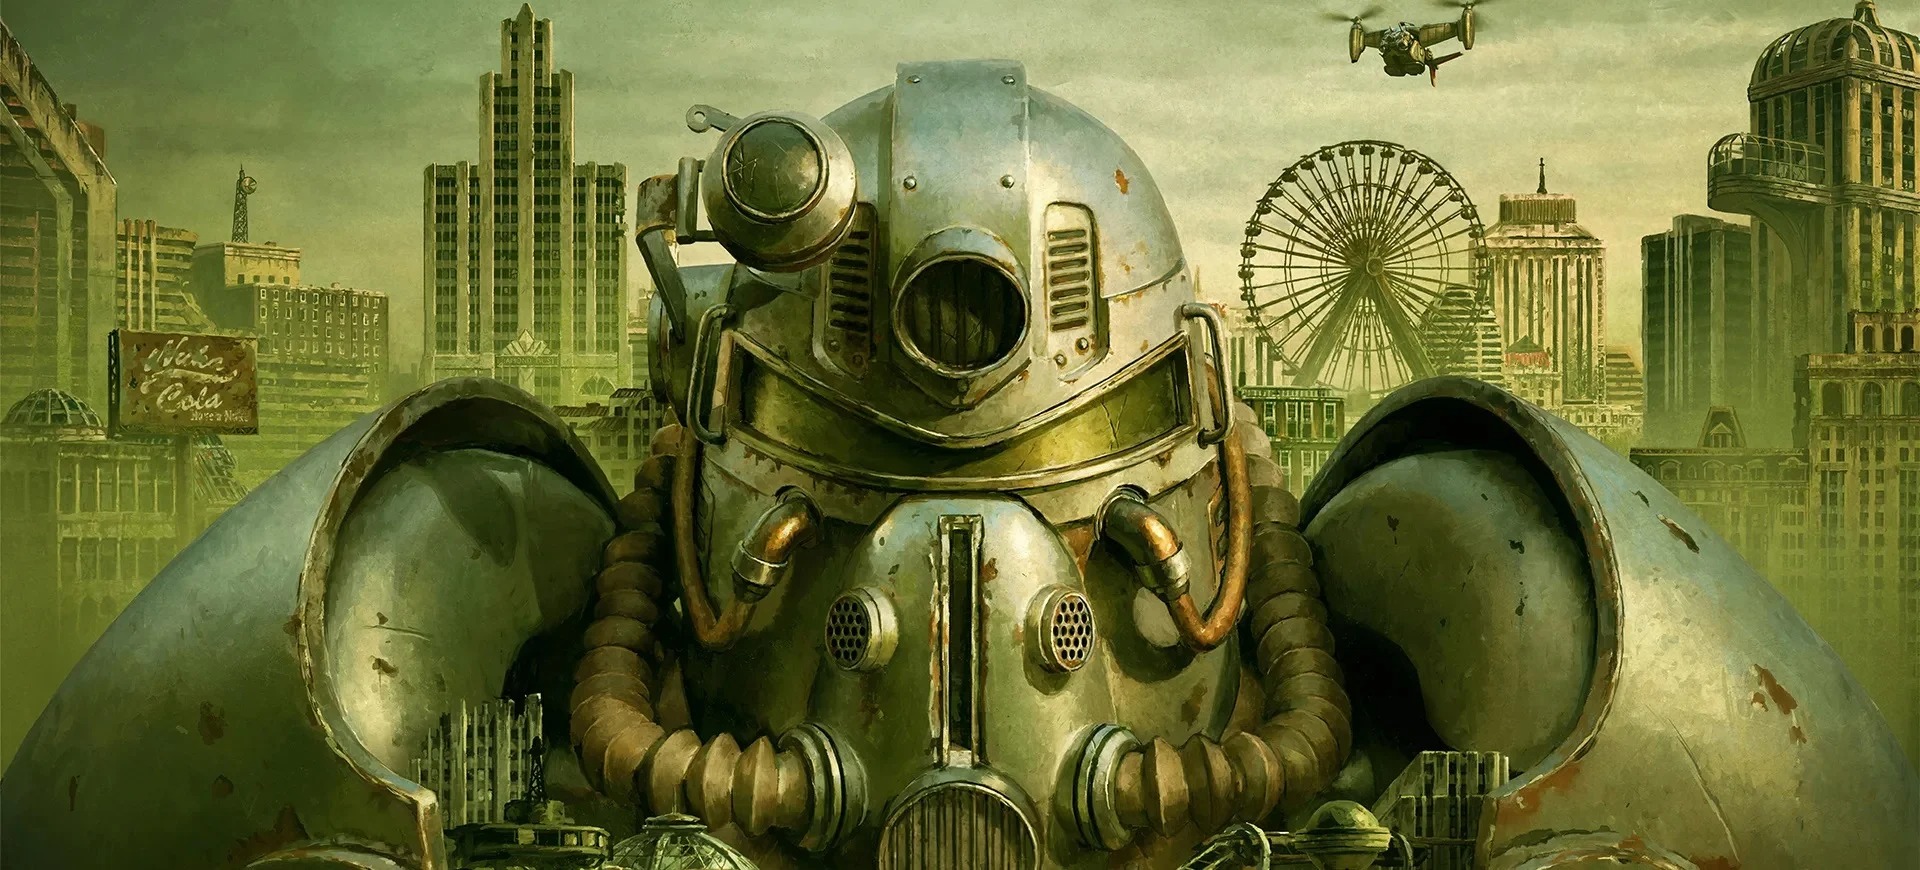 رکورد تعداد بازیکنان همزمان Fallout 76 بار دیگر در استیم شکست